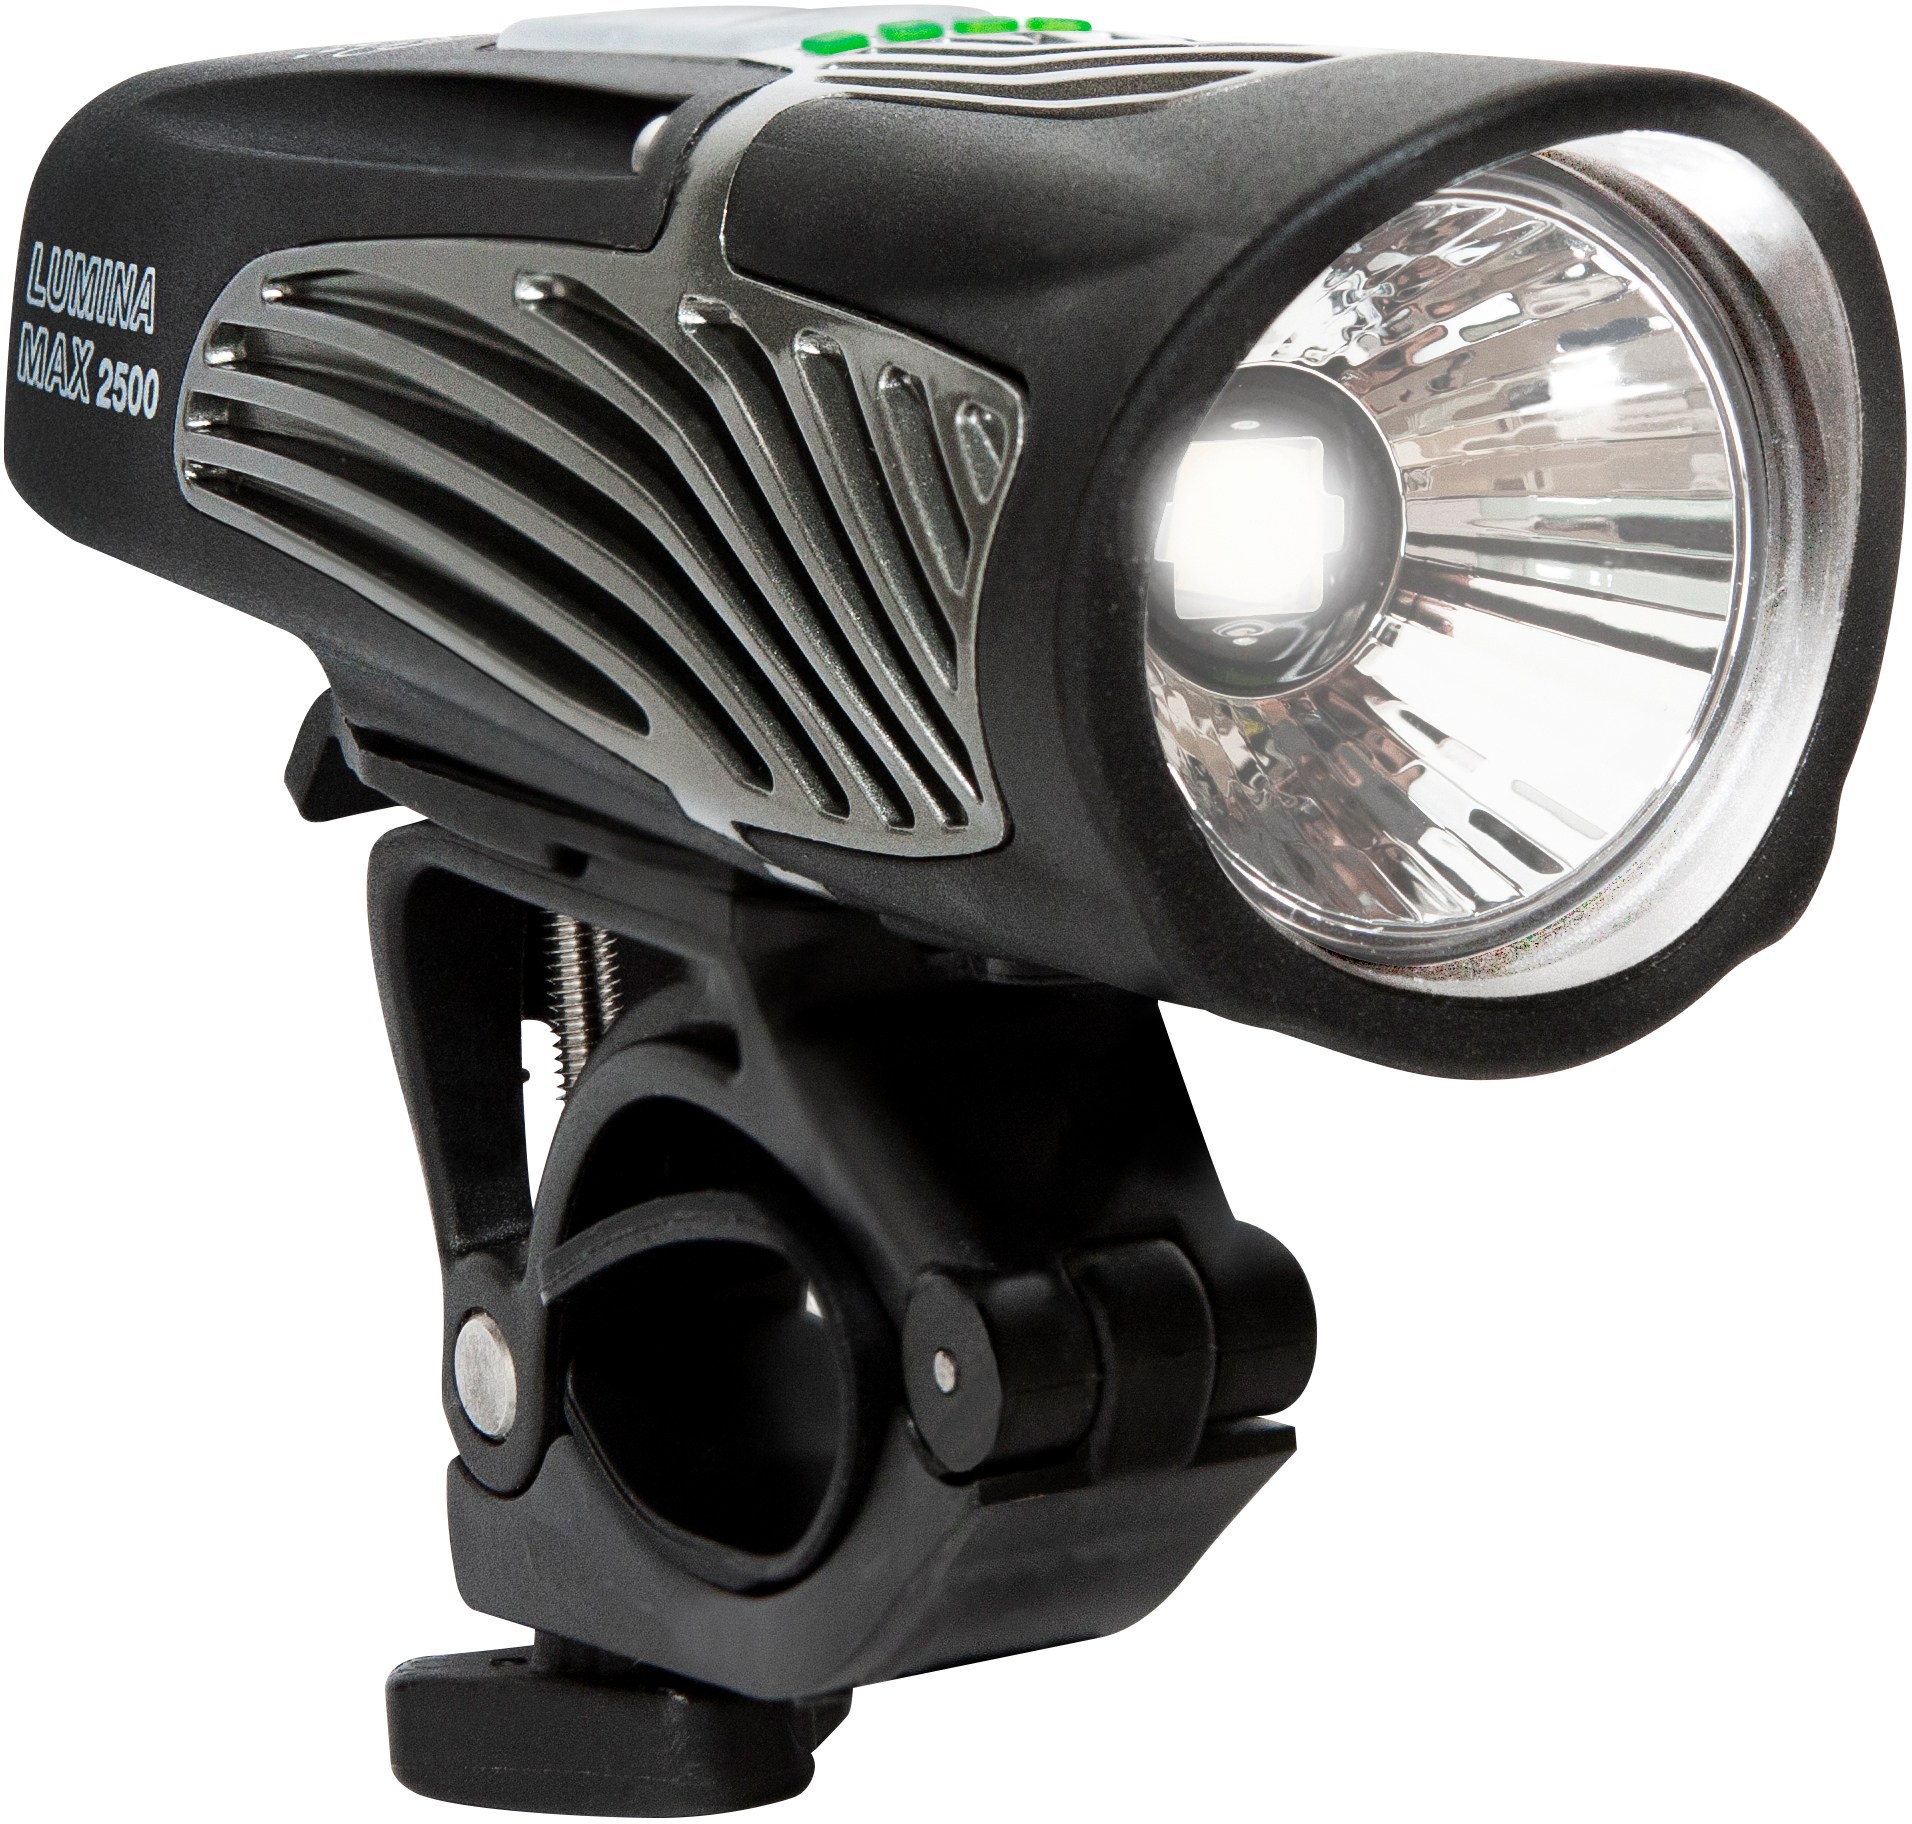 цена Передний велосипедный фонарь Lumina Max 2500 с NiteLink NiteRider